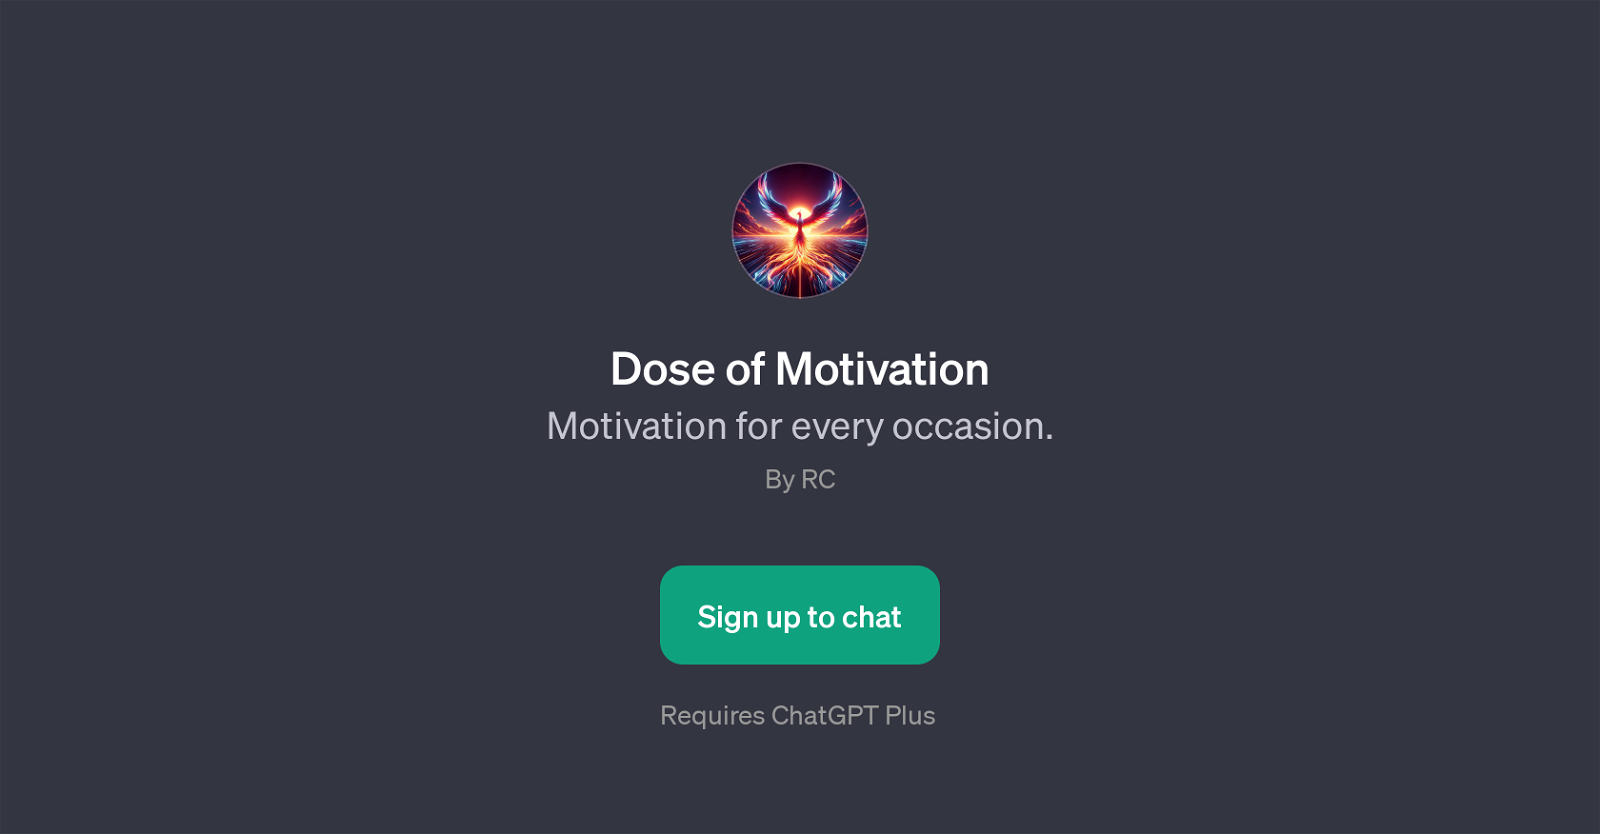 Dose of Motivation website